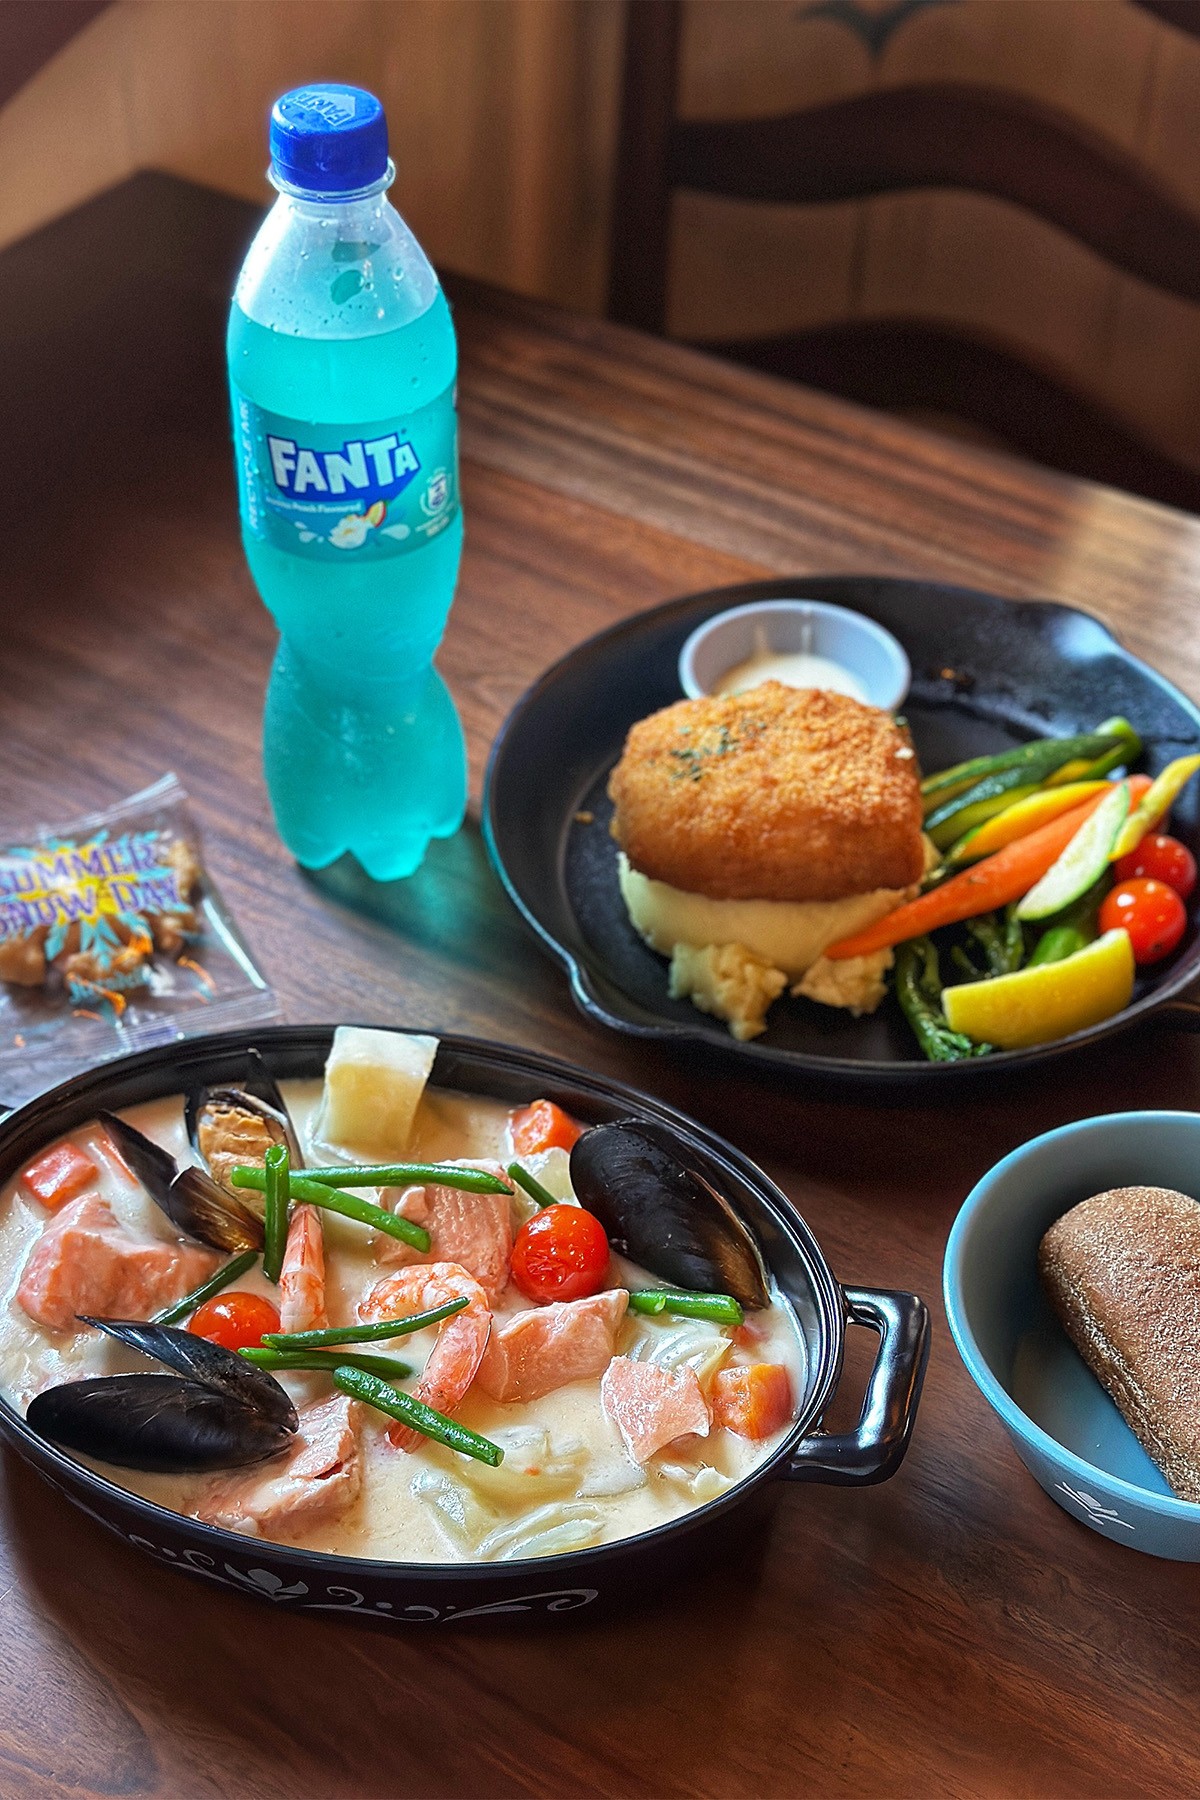 來到阿德爾港畔餐廳能喝到該區限定供應的藍色芬達；「港畔海鮮匯」以濃郁奶油醬汁搭配淡菜、馬鈴薯與紅蘿蔔。（港幣238元，約NT$976）